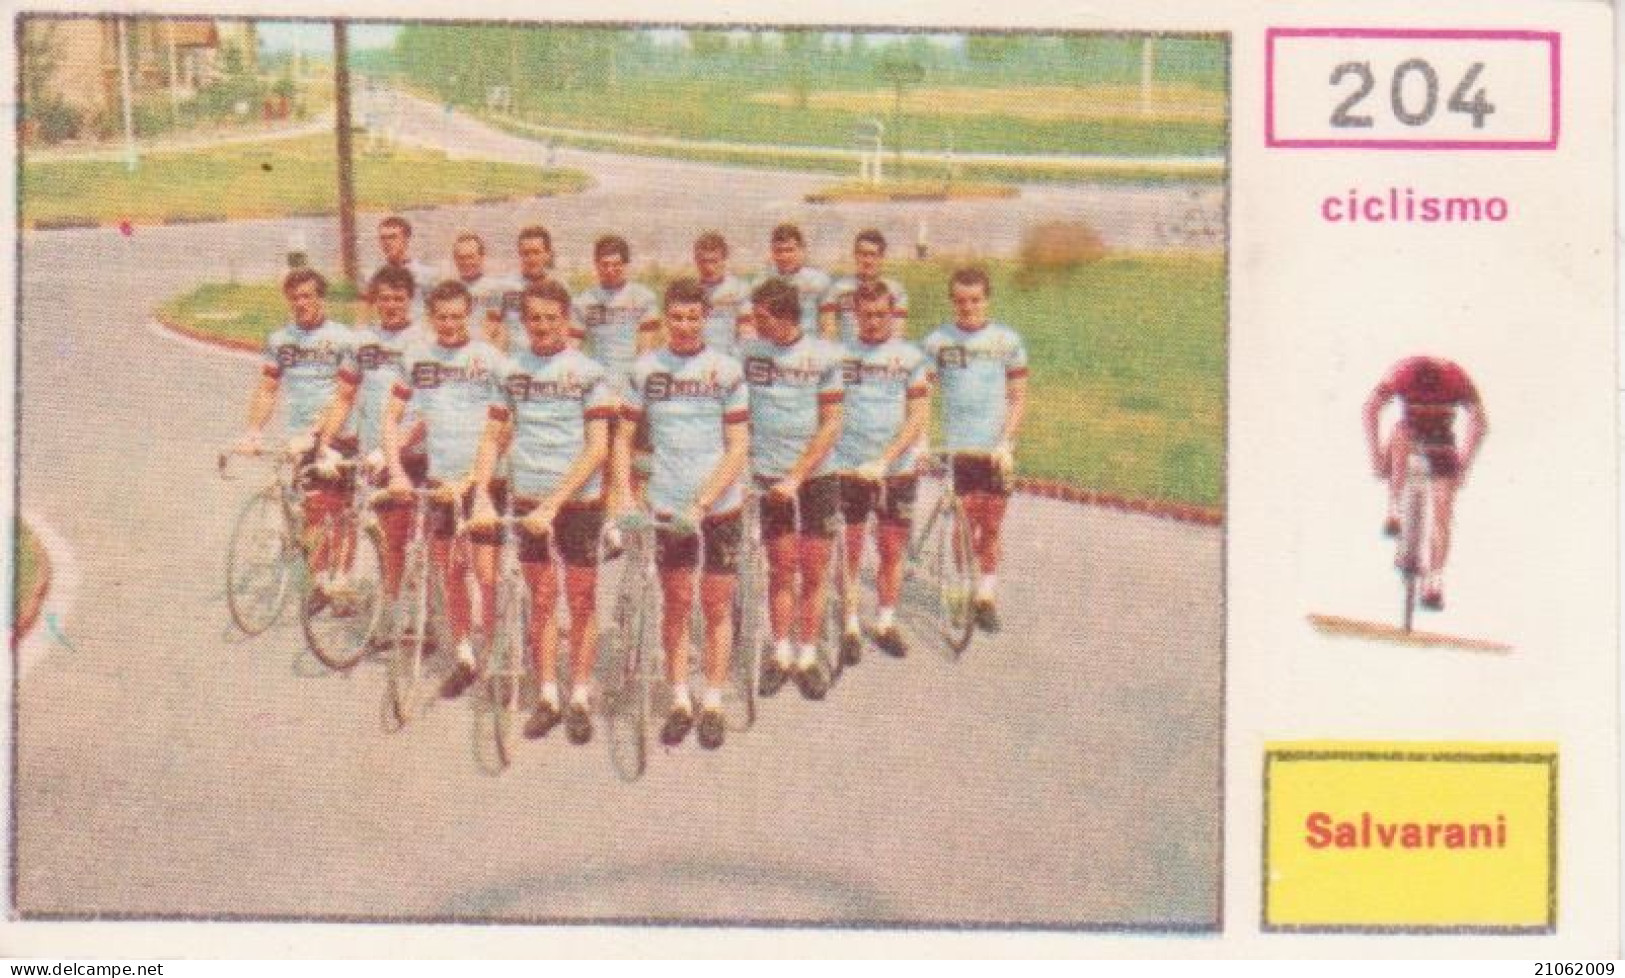 204 CICLISMO SQUADRA SALVARANI CYCLING TEAM - CAMPIONI DELLO SPORT 1967-68 PANINI STICKERS FIGURINE - Ciclismo